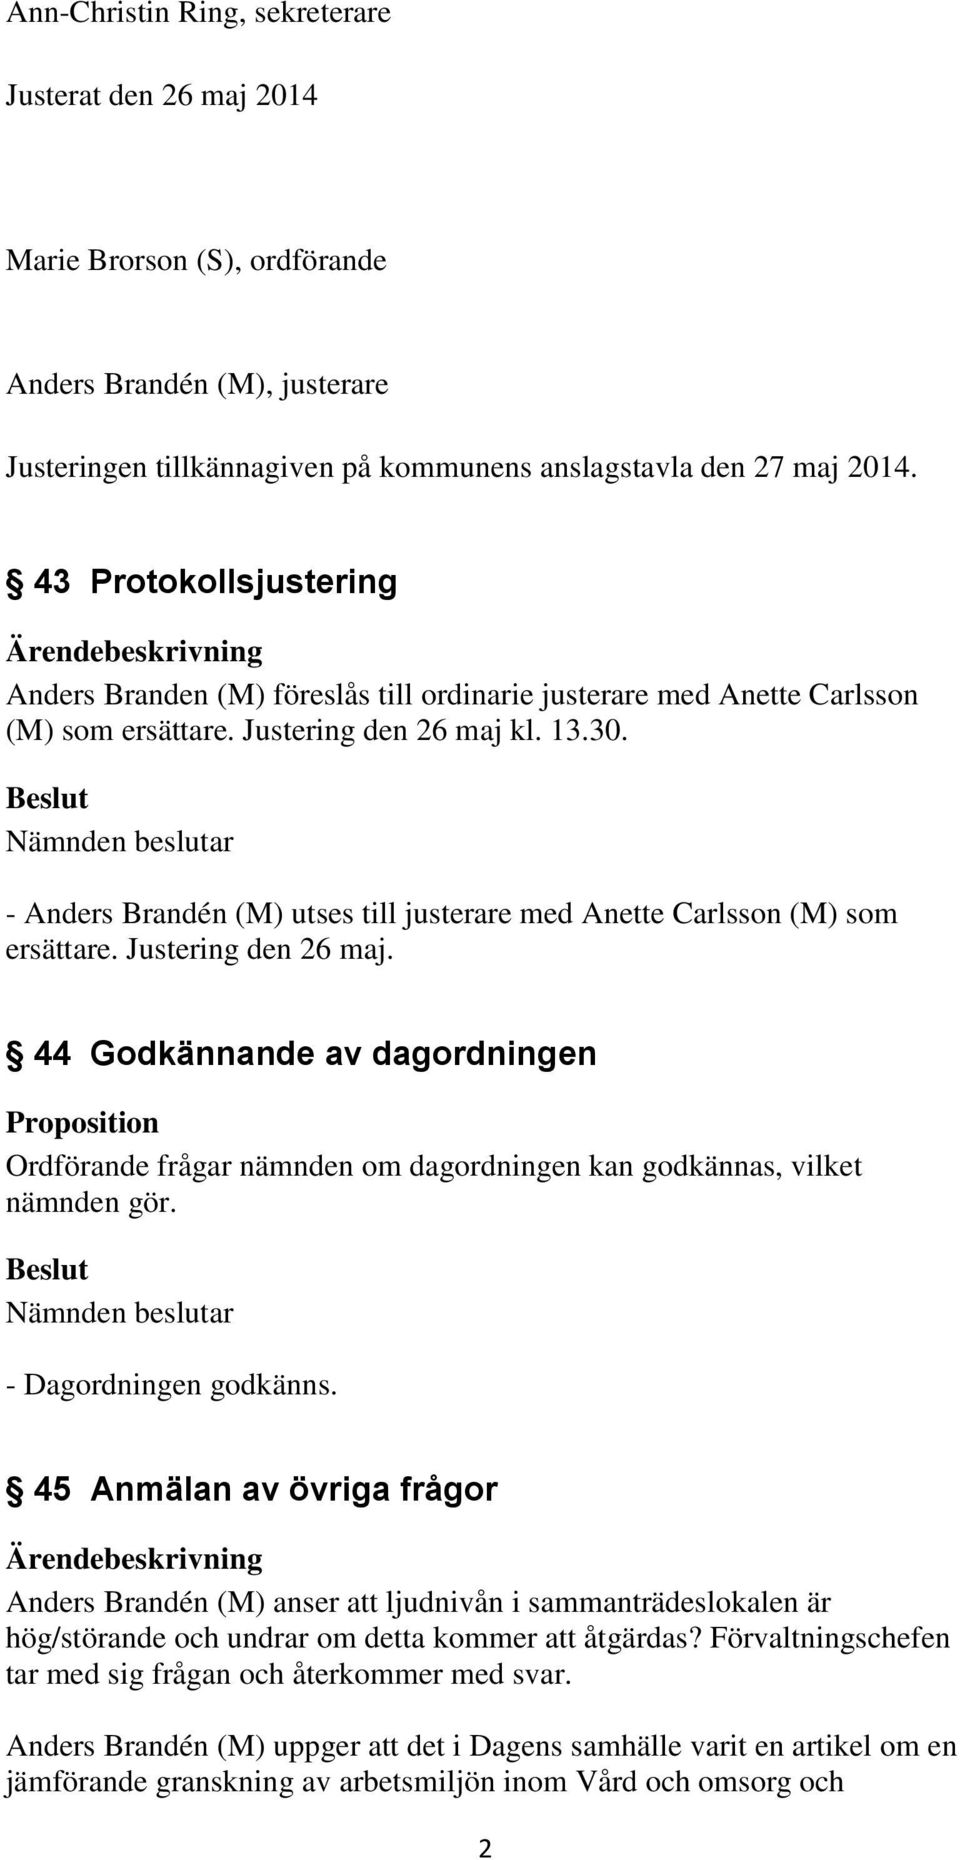 - Anders Brandén (M) utses till justerare med Anette Carlsson (M) som ersättare. Justering den 26 maj.